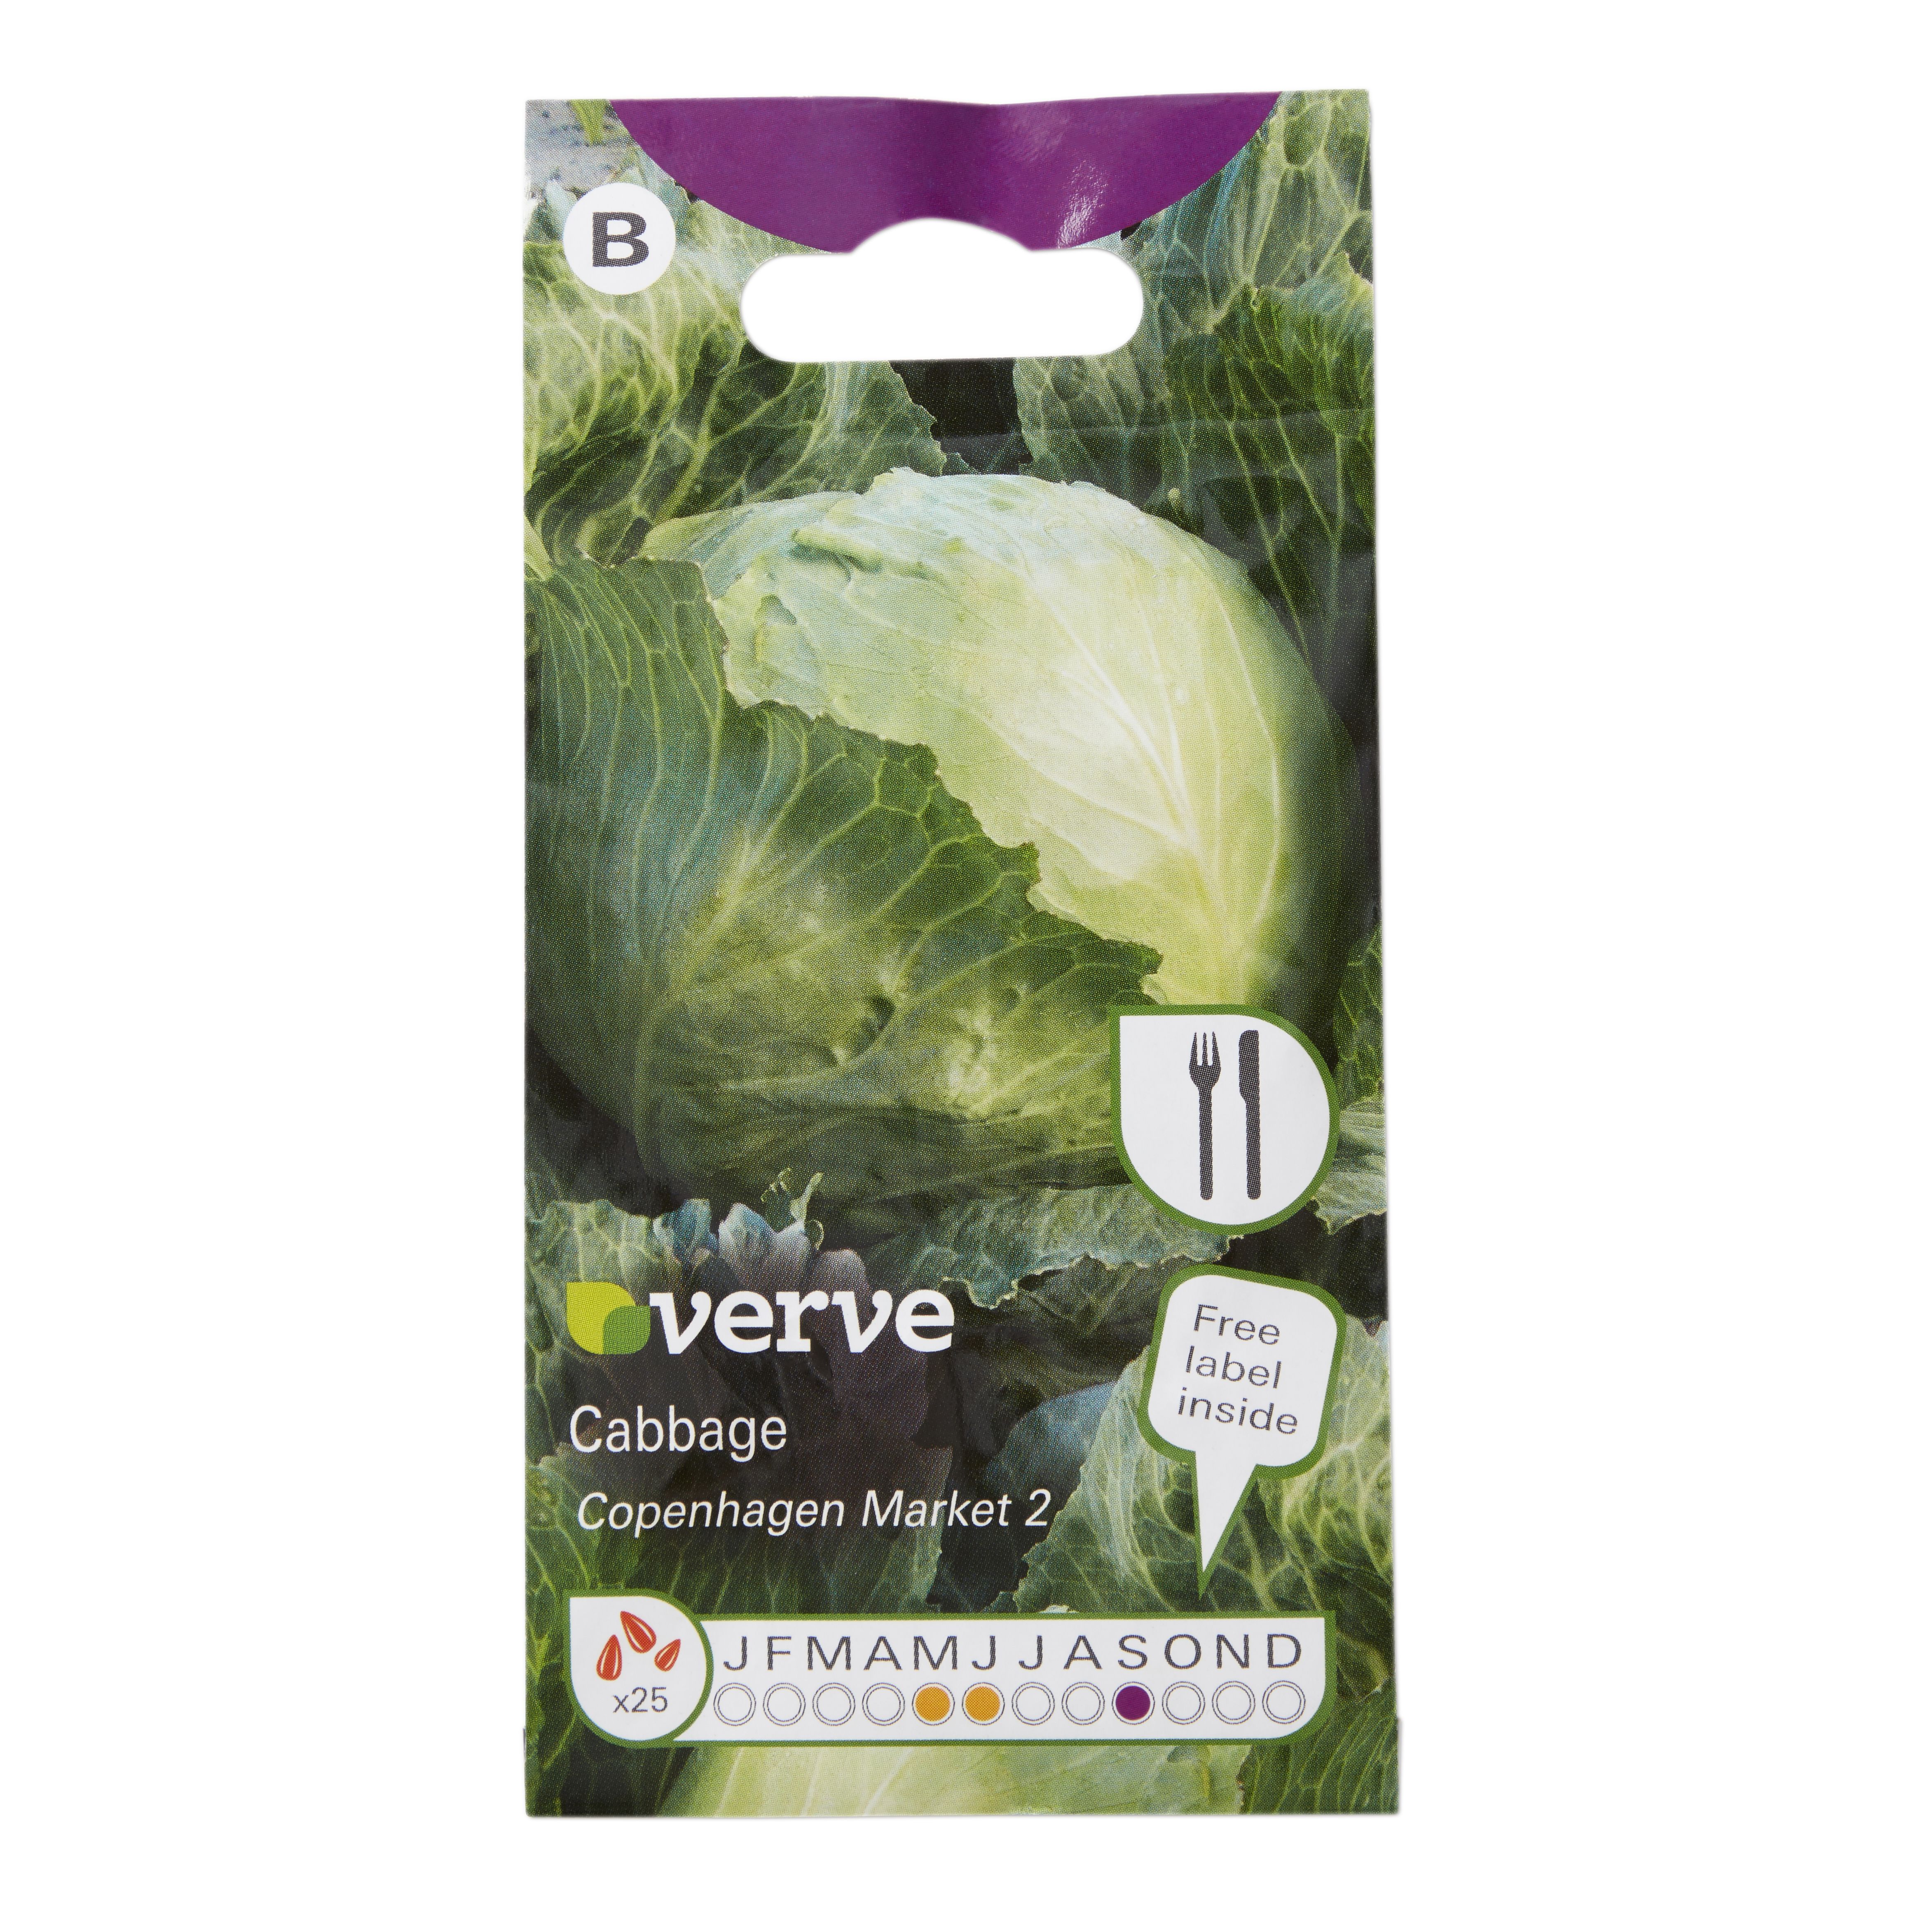 Verve Cabbage copenhagen market 2 Cabbage Seed